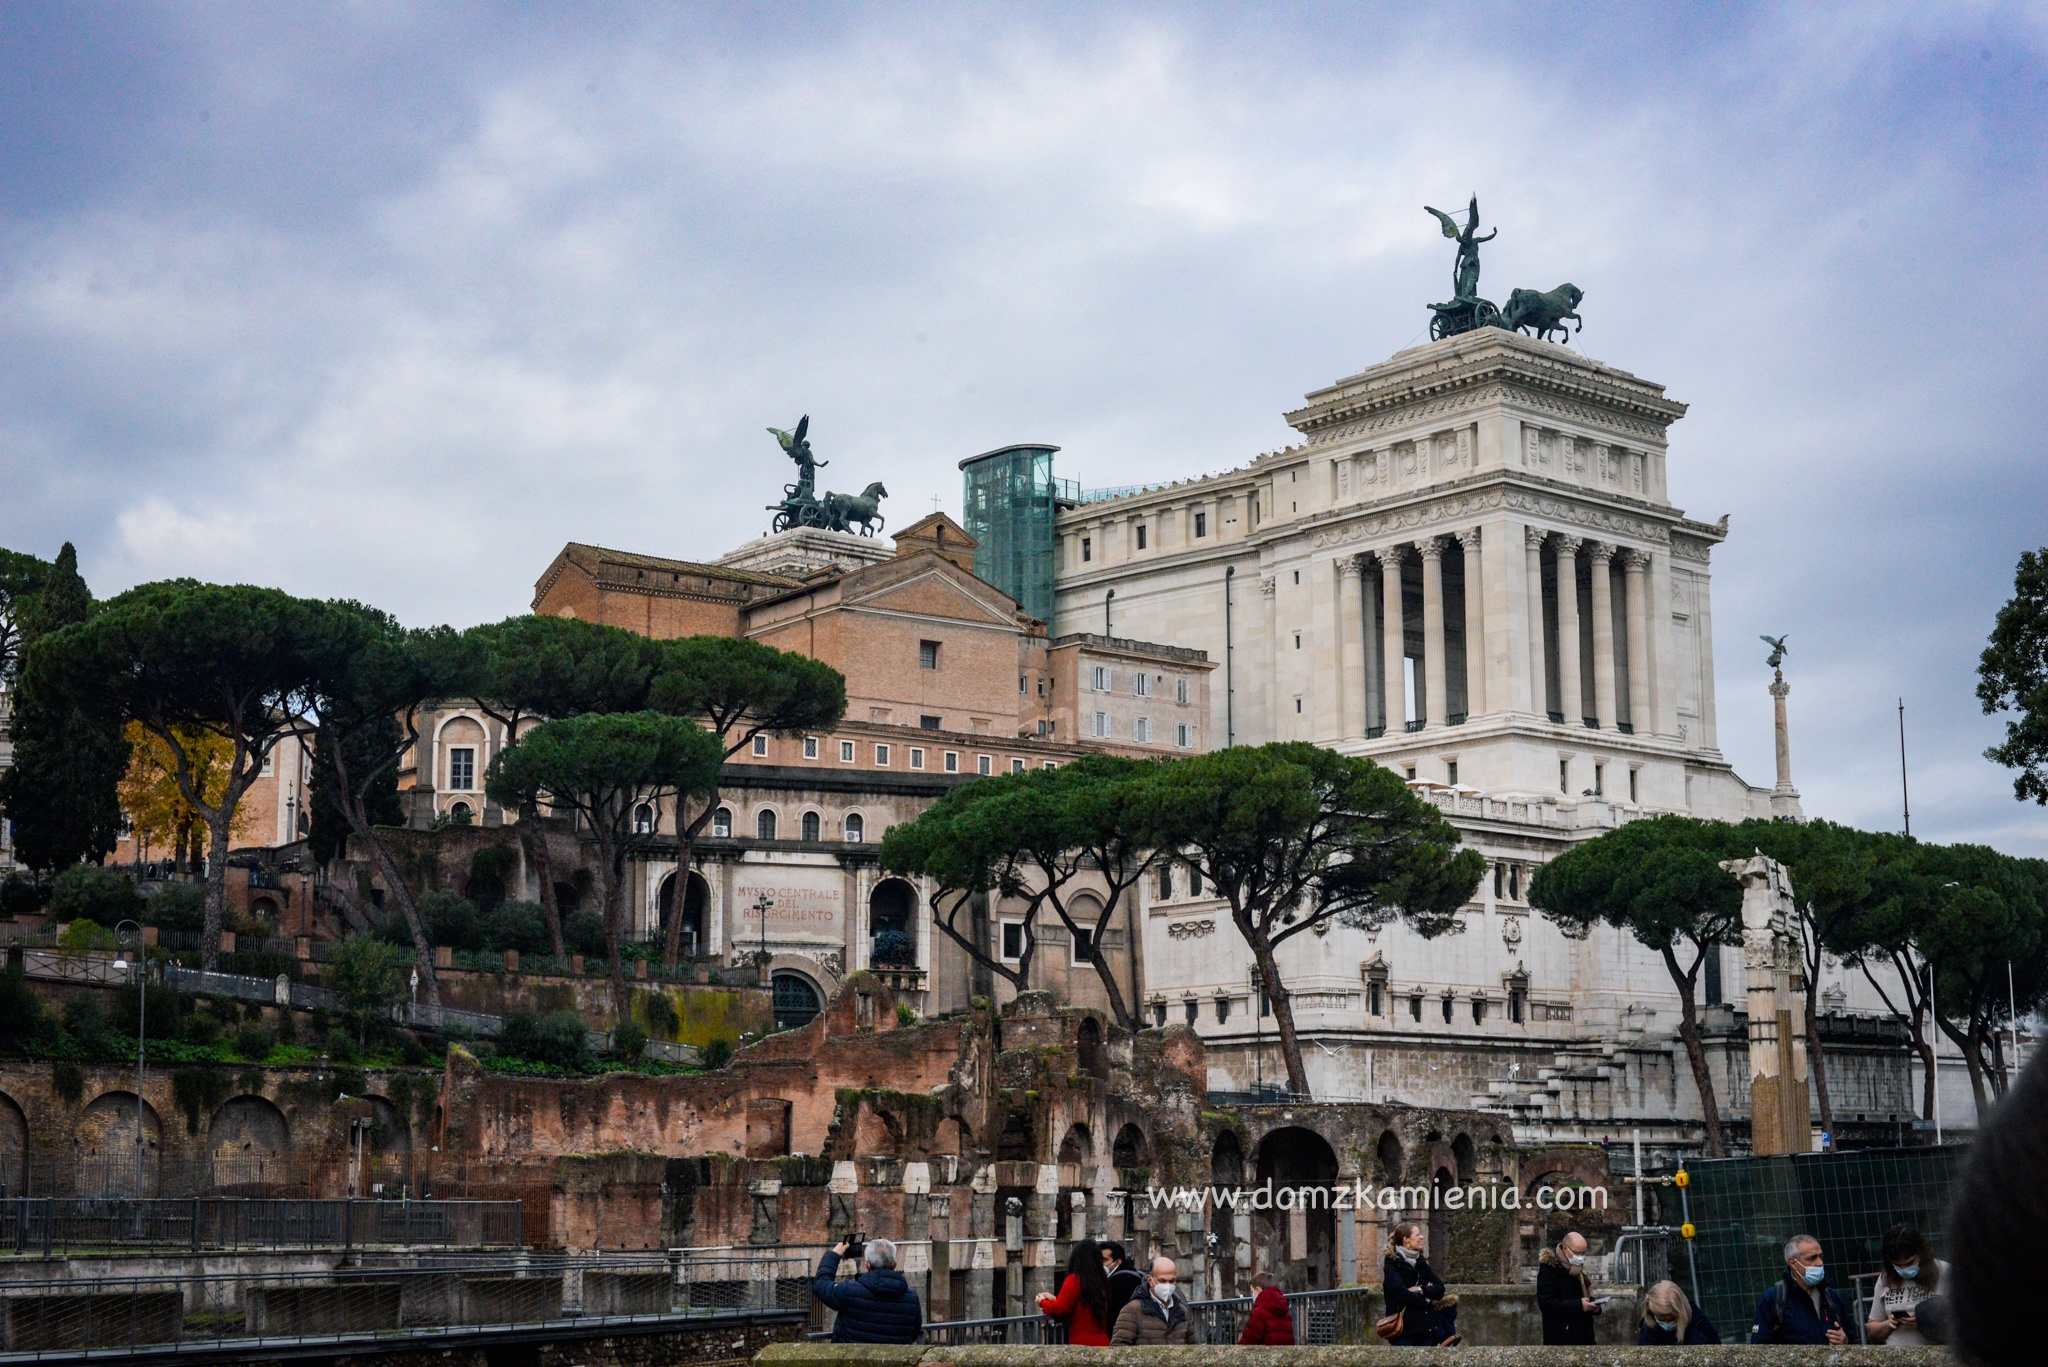 Jeden dzień w Rzymie, Dom z Kamienia blog